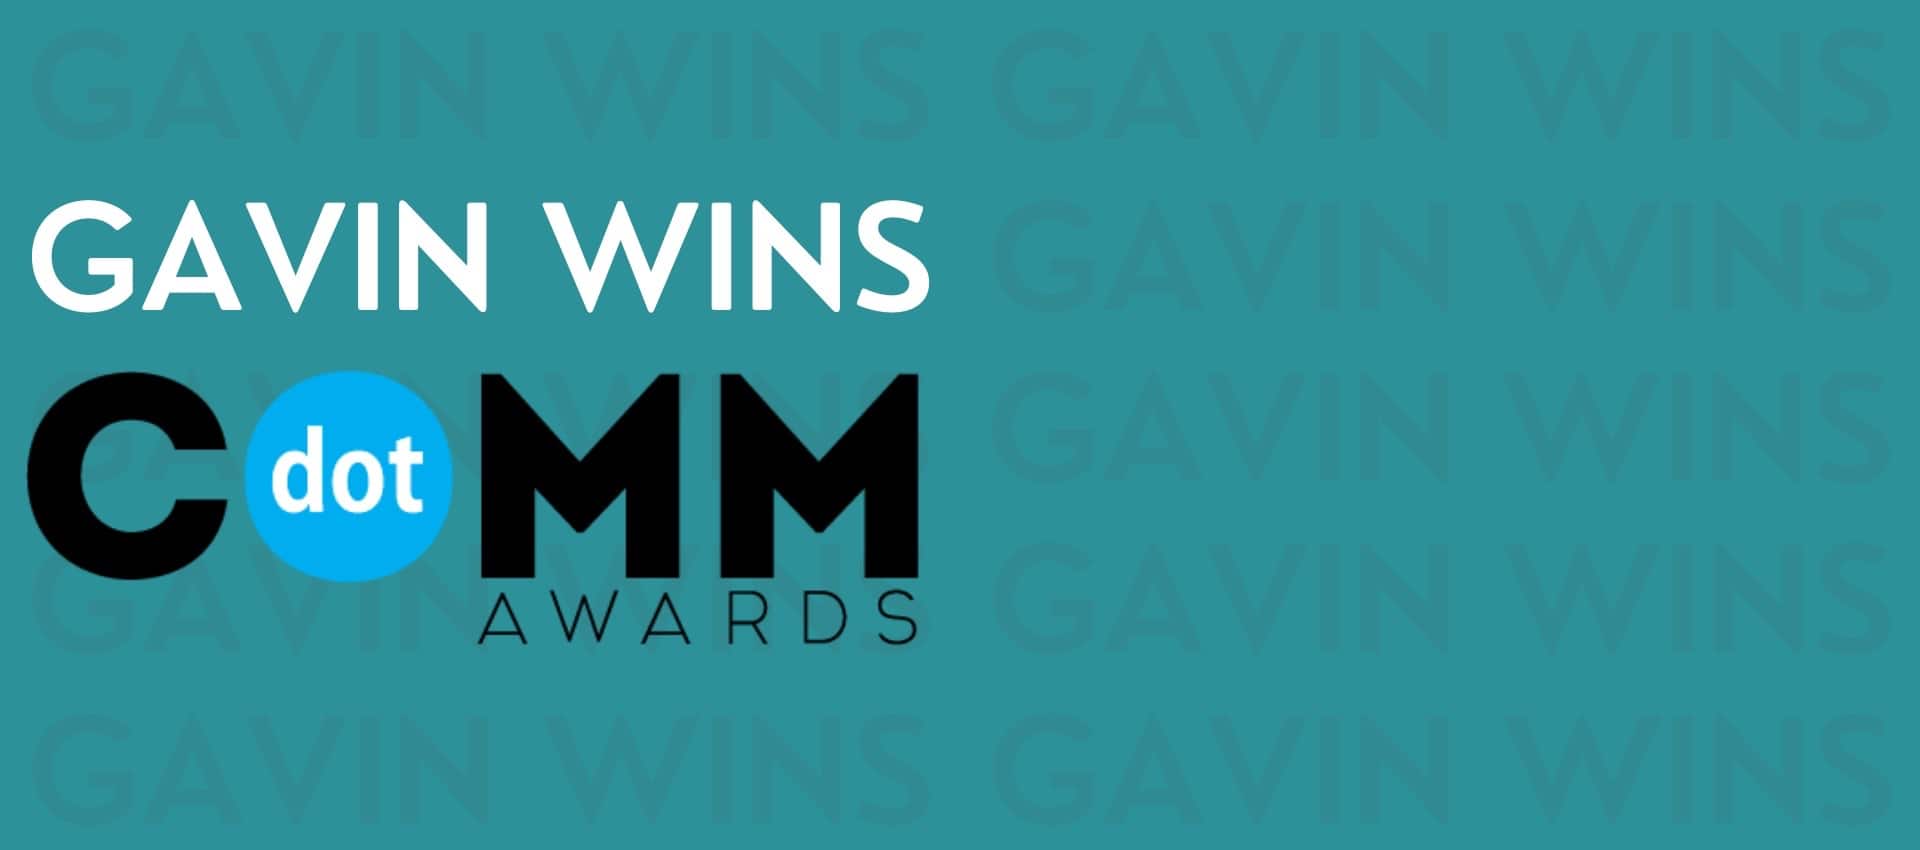 Blog header of Gavin winning dotCOMM Awards